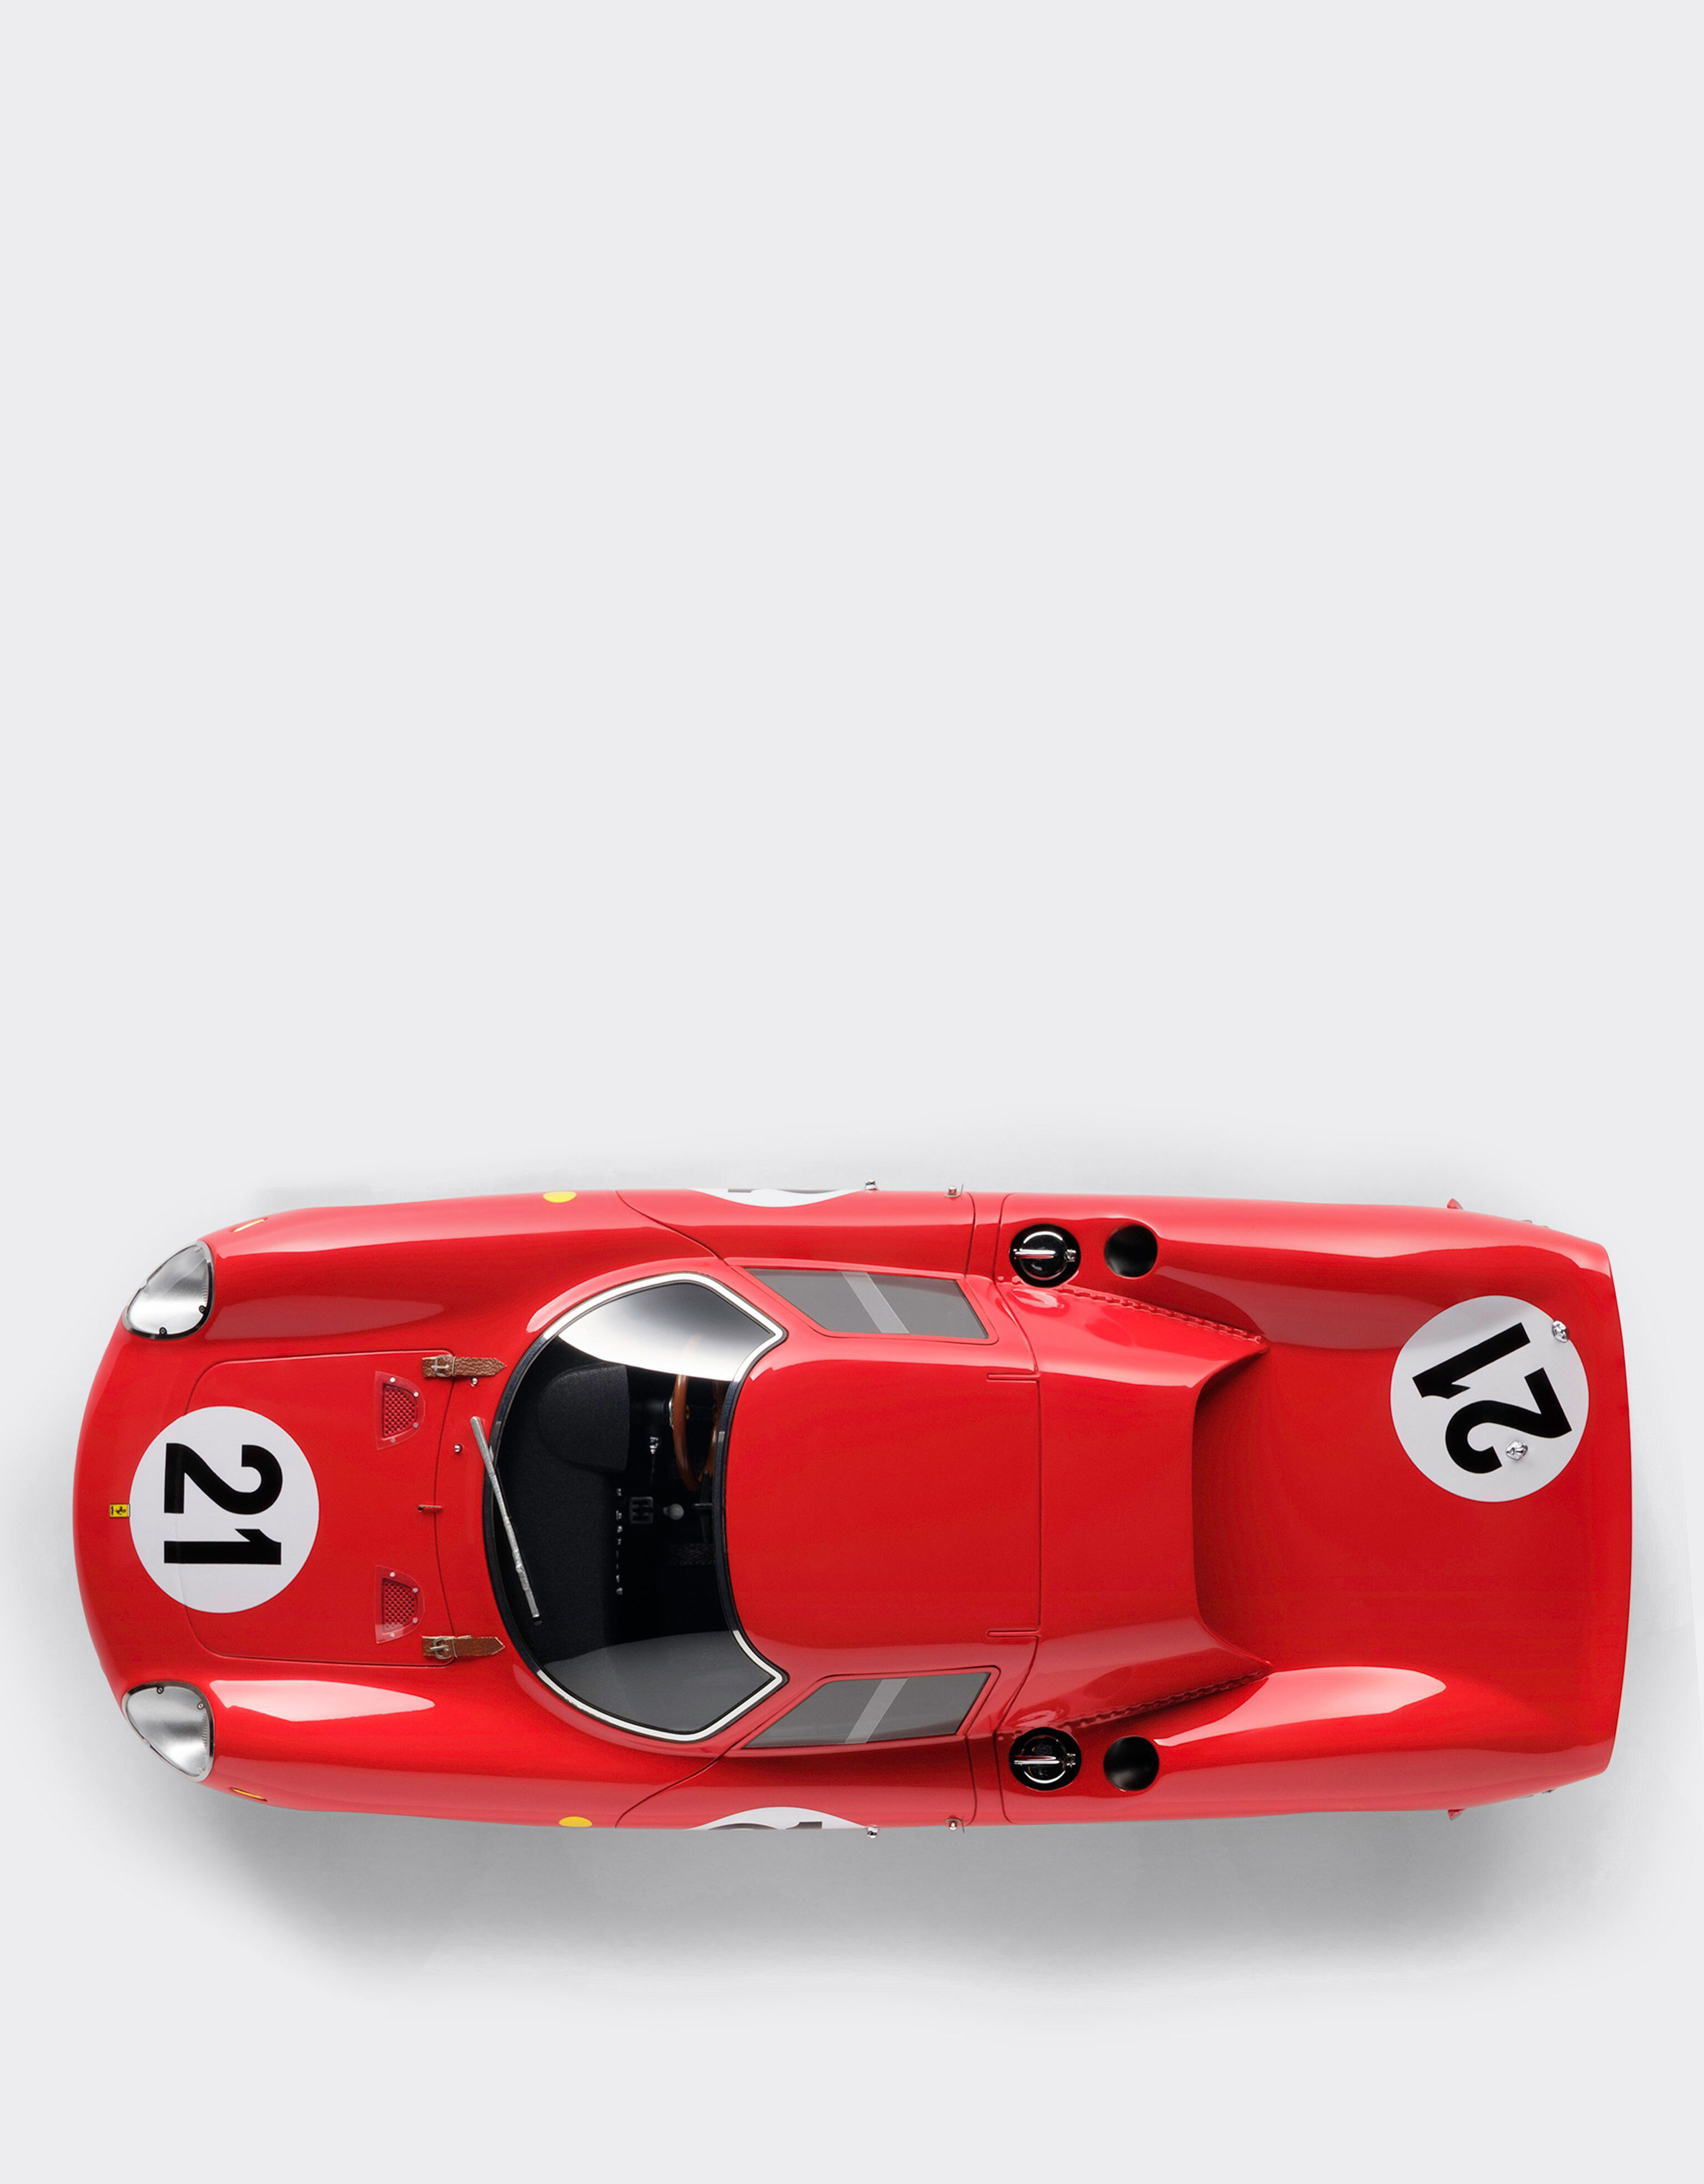 Ferrari Modello Ferrari 250 LM 1965 Le Mans in scala 1:18 MULTICOLORE L7976f